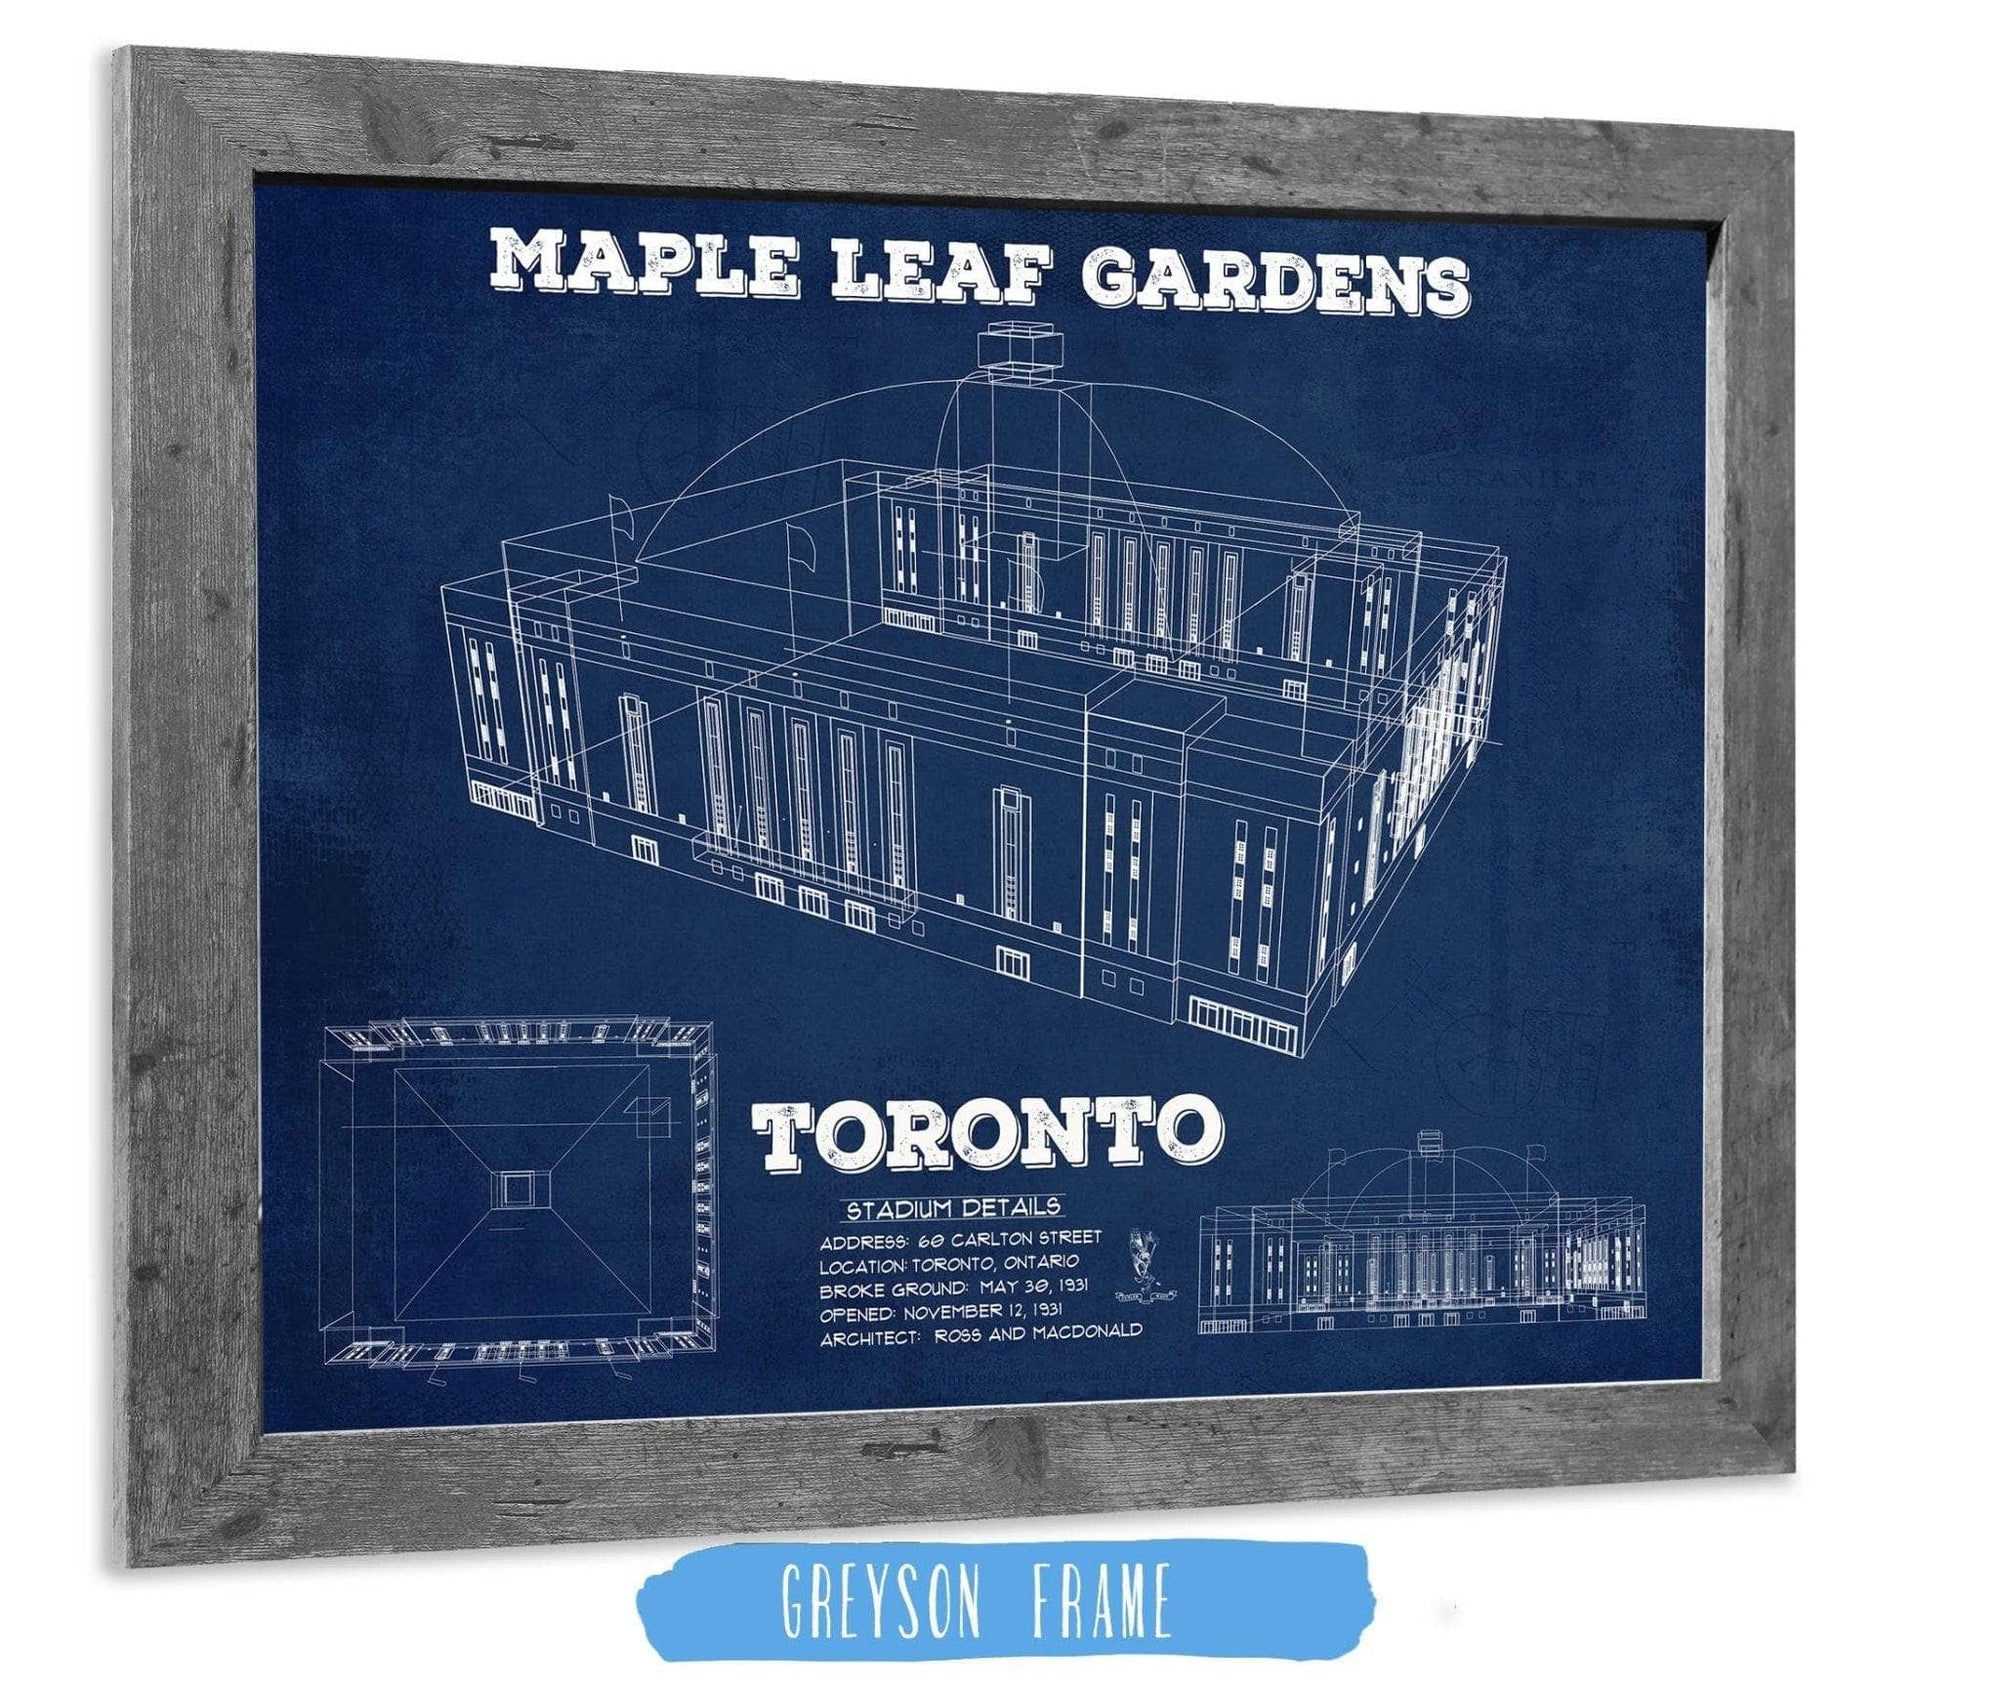 Cutler West 14" x 11" / Greyson Frame Maple Leaf Gardens - Vintage NHL Hockey Print 784291932-TOP